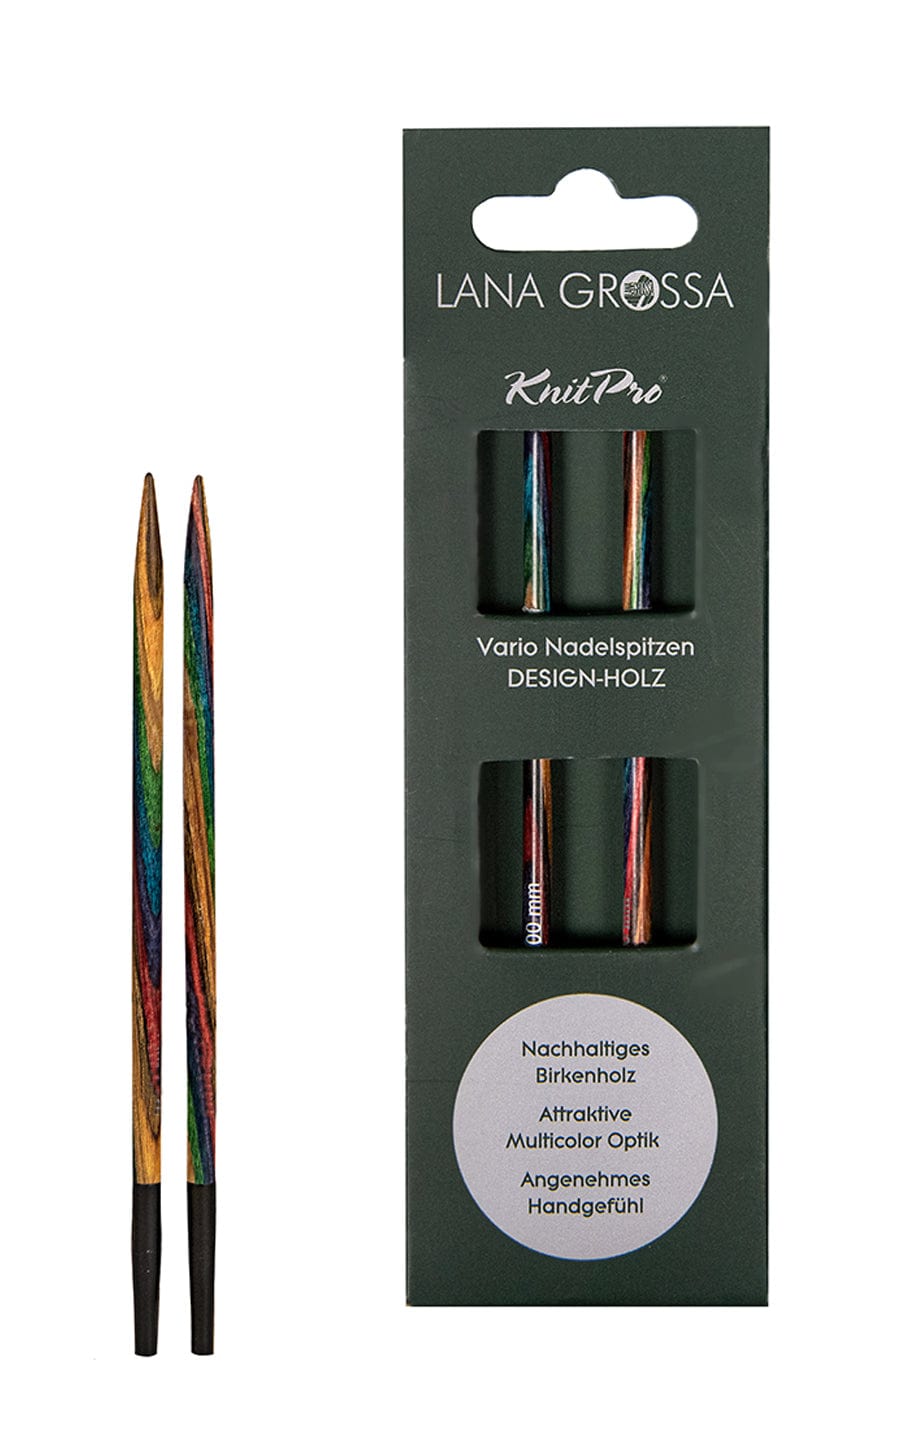 LANA GROSSA Nadeln Kurze 5,0 mm Nadelspitze Vario aus Holz - neue Verpackung